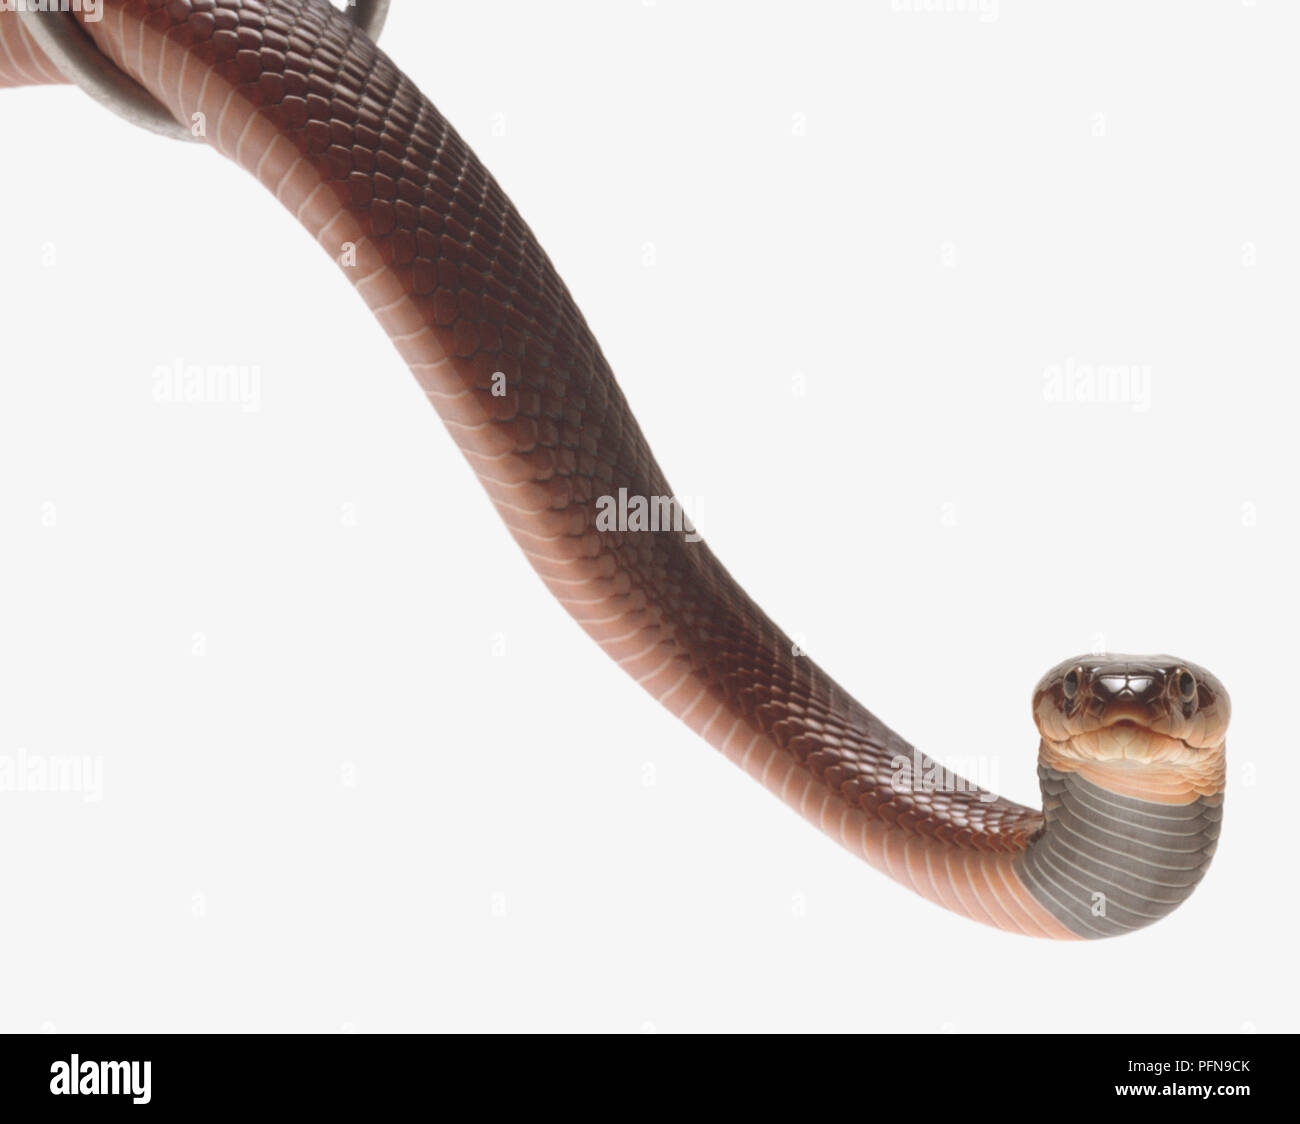 Vista frontal de la cabeza de un rojo Cobra escupiendo veneno mostrando las glándulas localizadas debajo de los ojos. La mayor parte de la cabeza está muy por detrás de los ojos, reduciendo bruscamente hacia el hocico. Una banda oscura es visible en la garganta. Foto de stock